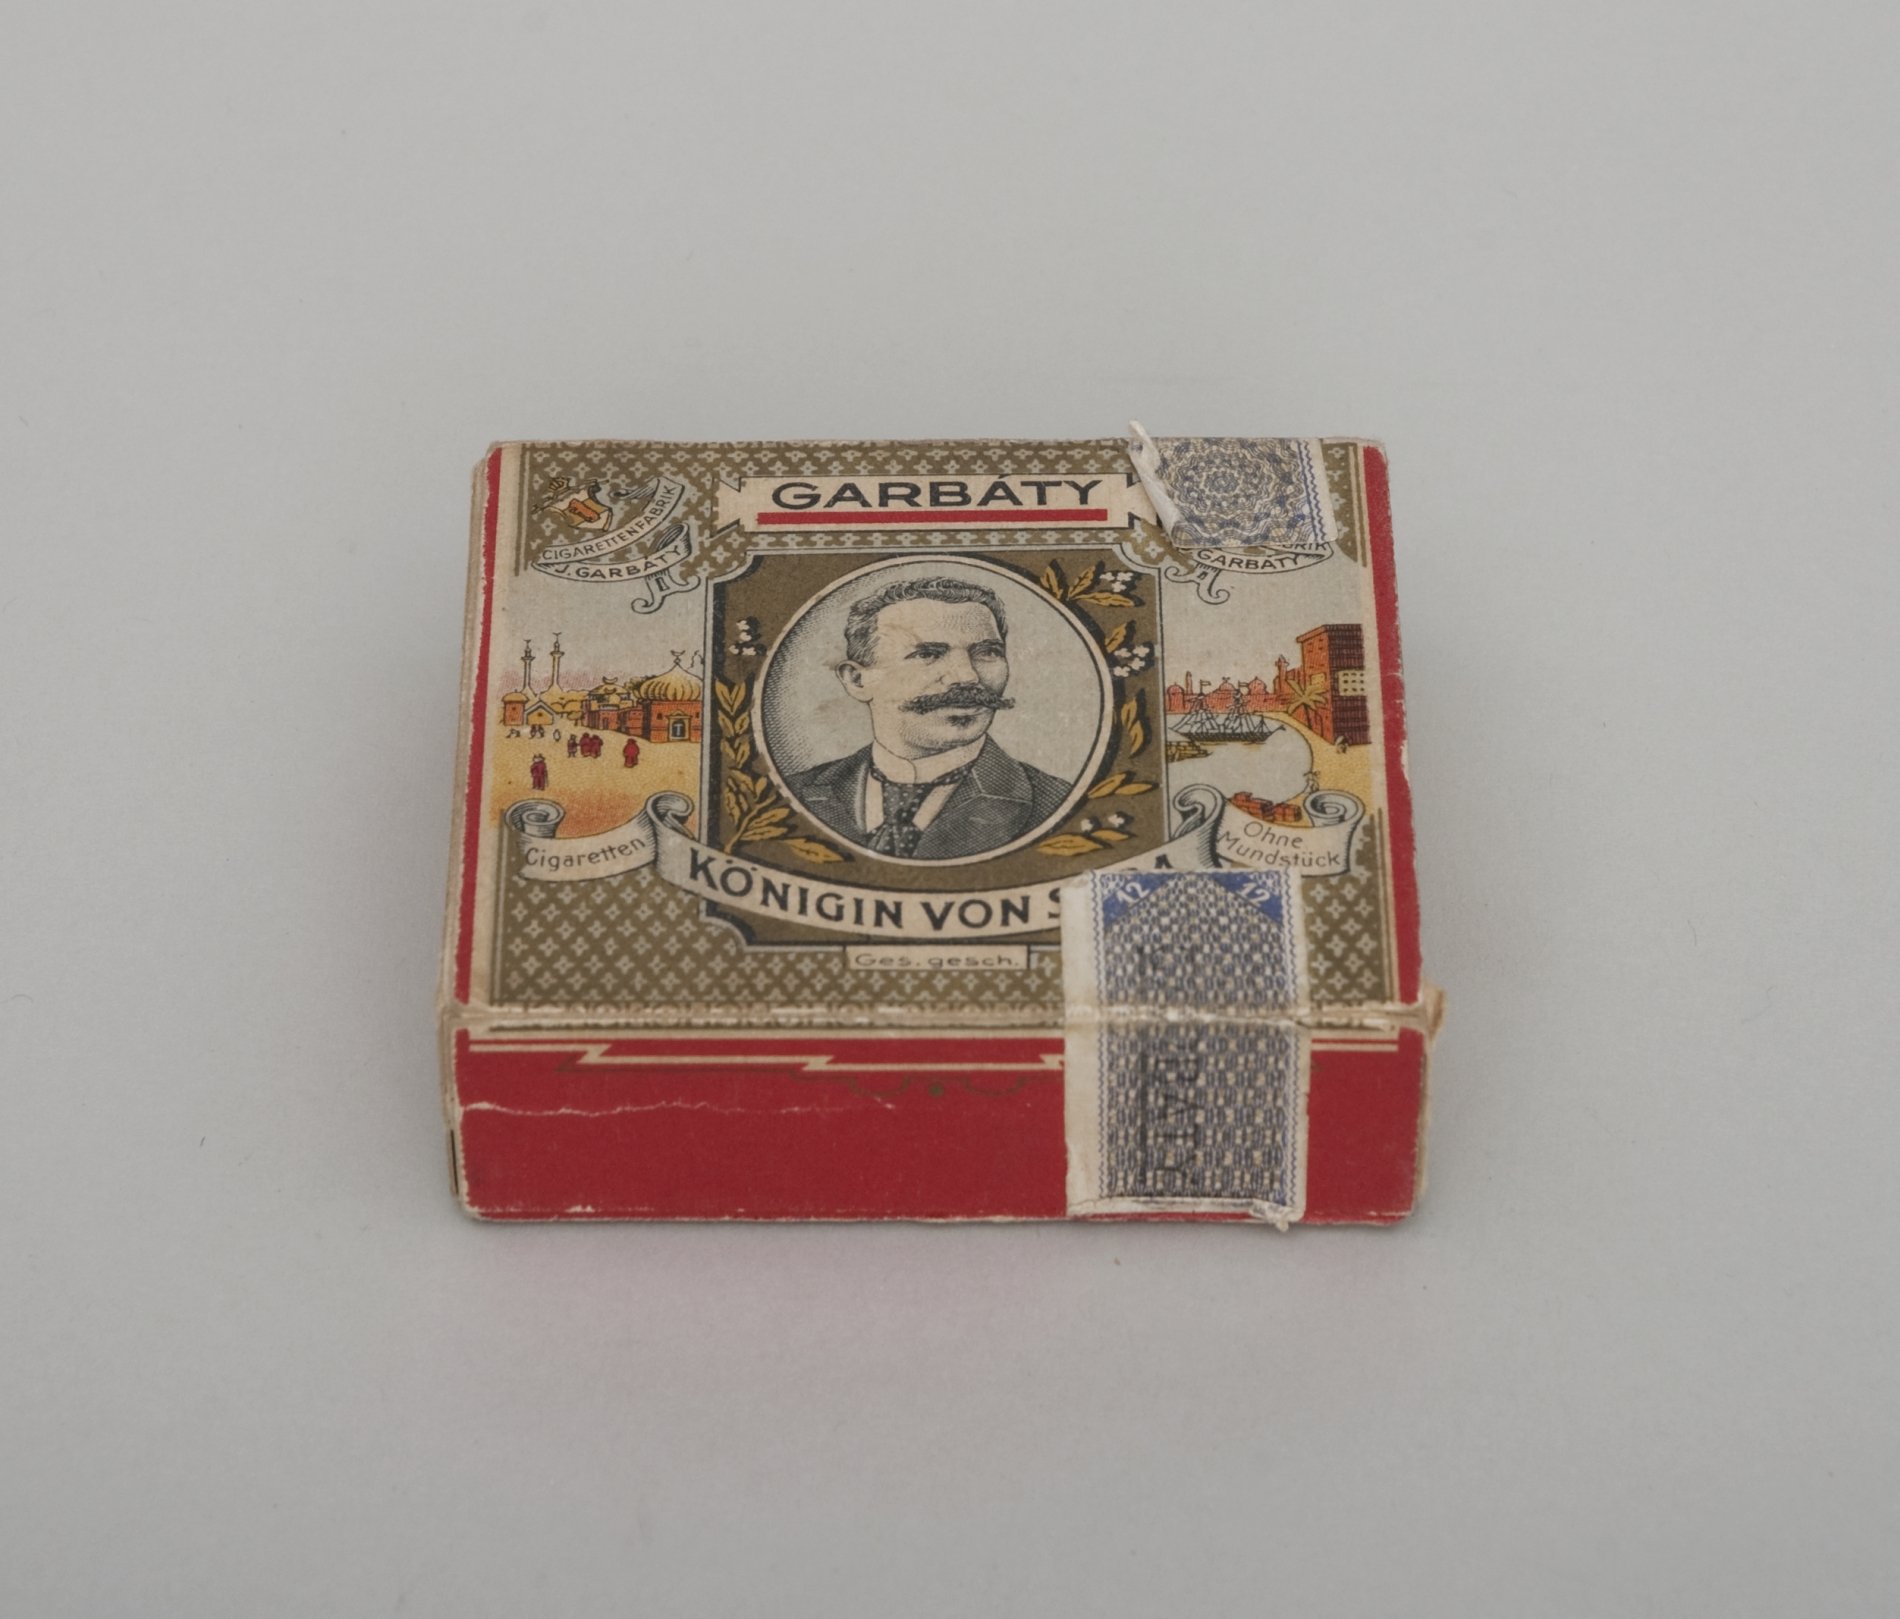 Packung "Garbaty Cigaretten - Königin von Saba" (Stiftung Domäne Dahlem - Landgut und Museum, Weiternutzung nur mit Genehmigung des Museums CC BY-NC-SA)